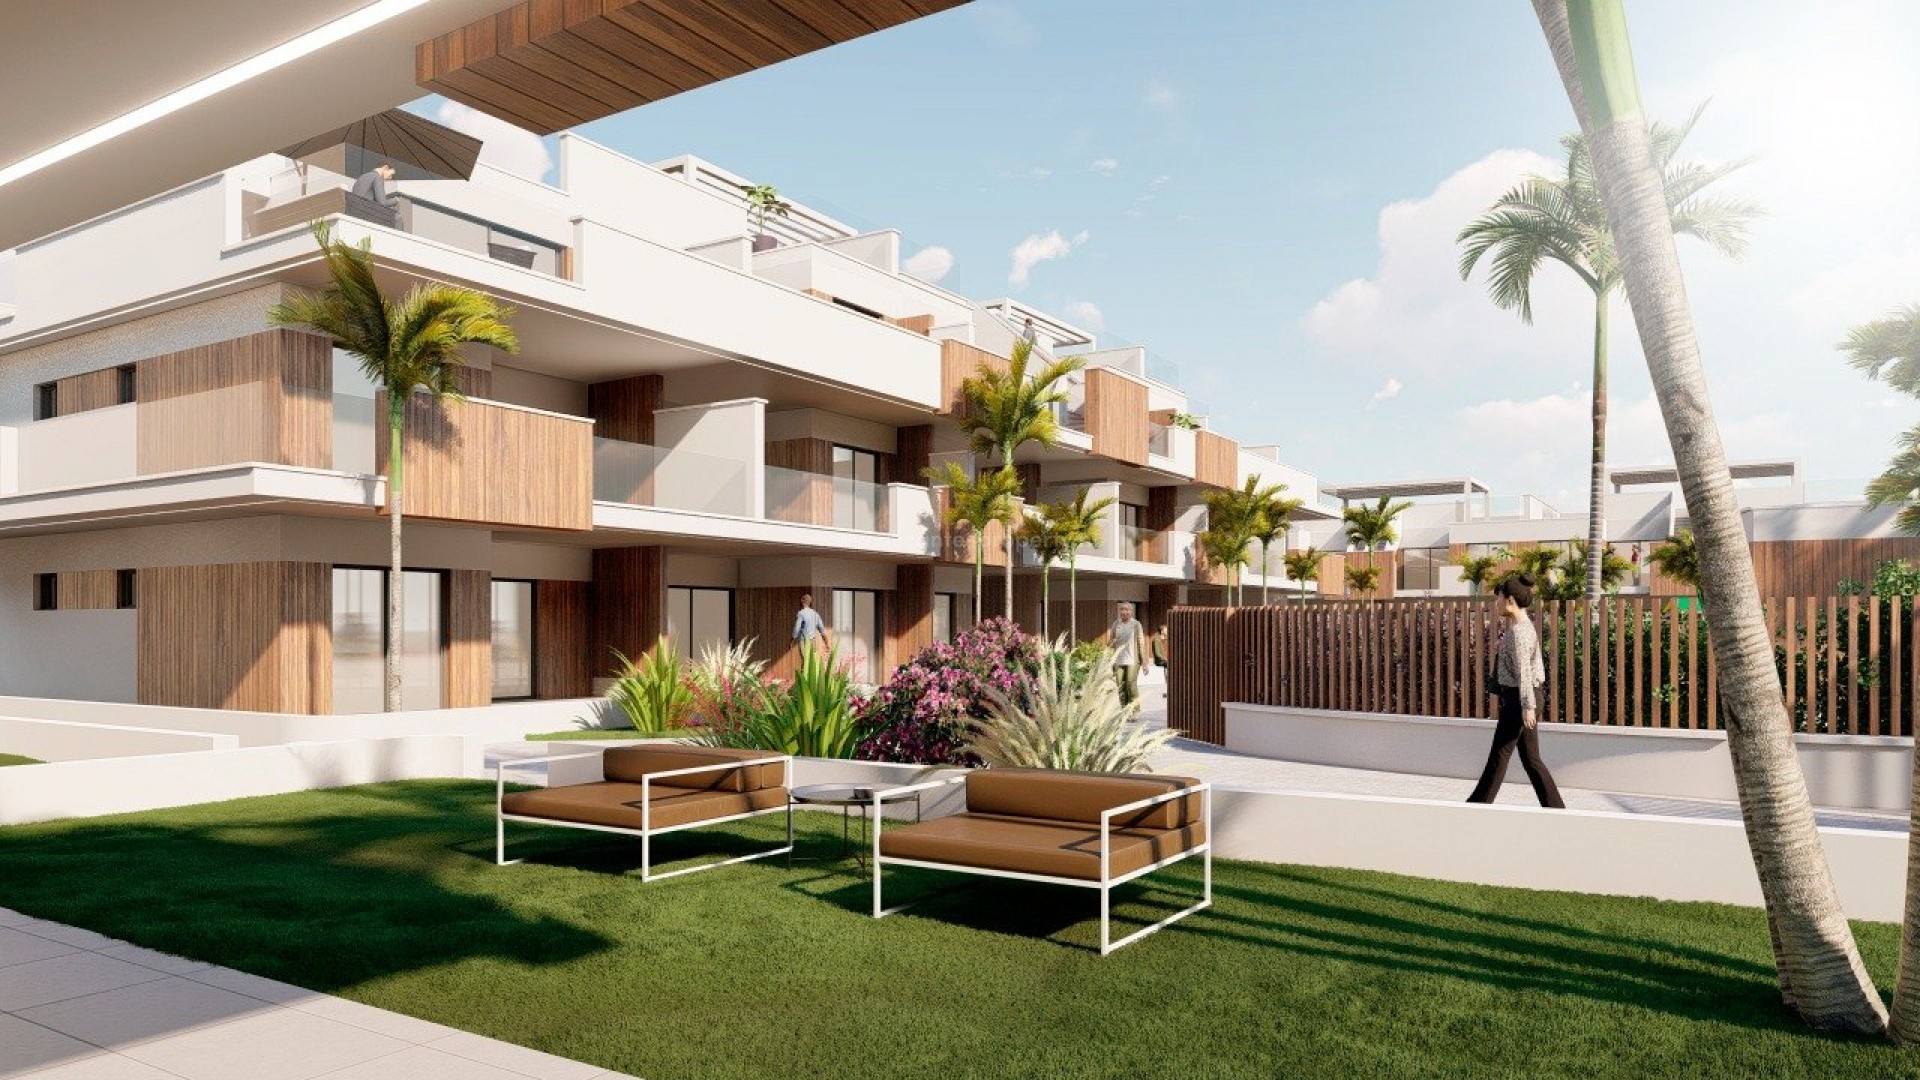 Bungalow, leiligheter/toppleiligheter i Pilar de La Horadada, 2/3 soverom, terrasser, toppleiligheter m/solarium, felles hage med basseng og treningsstudio